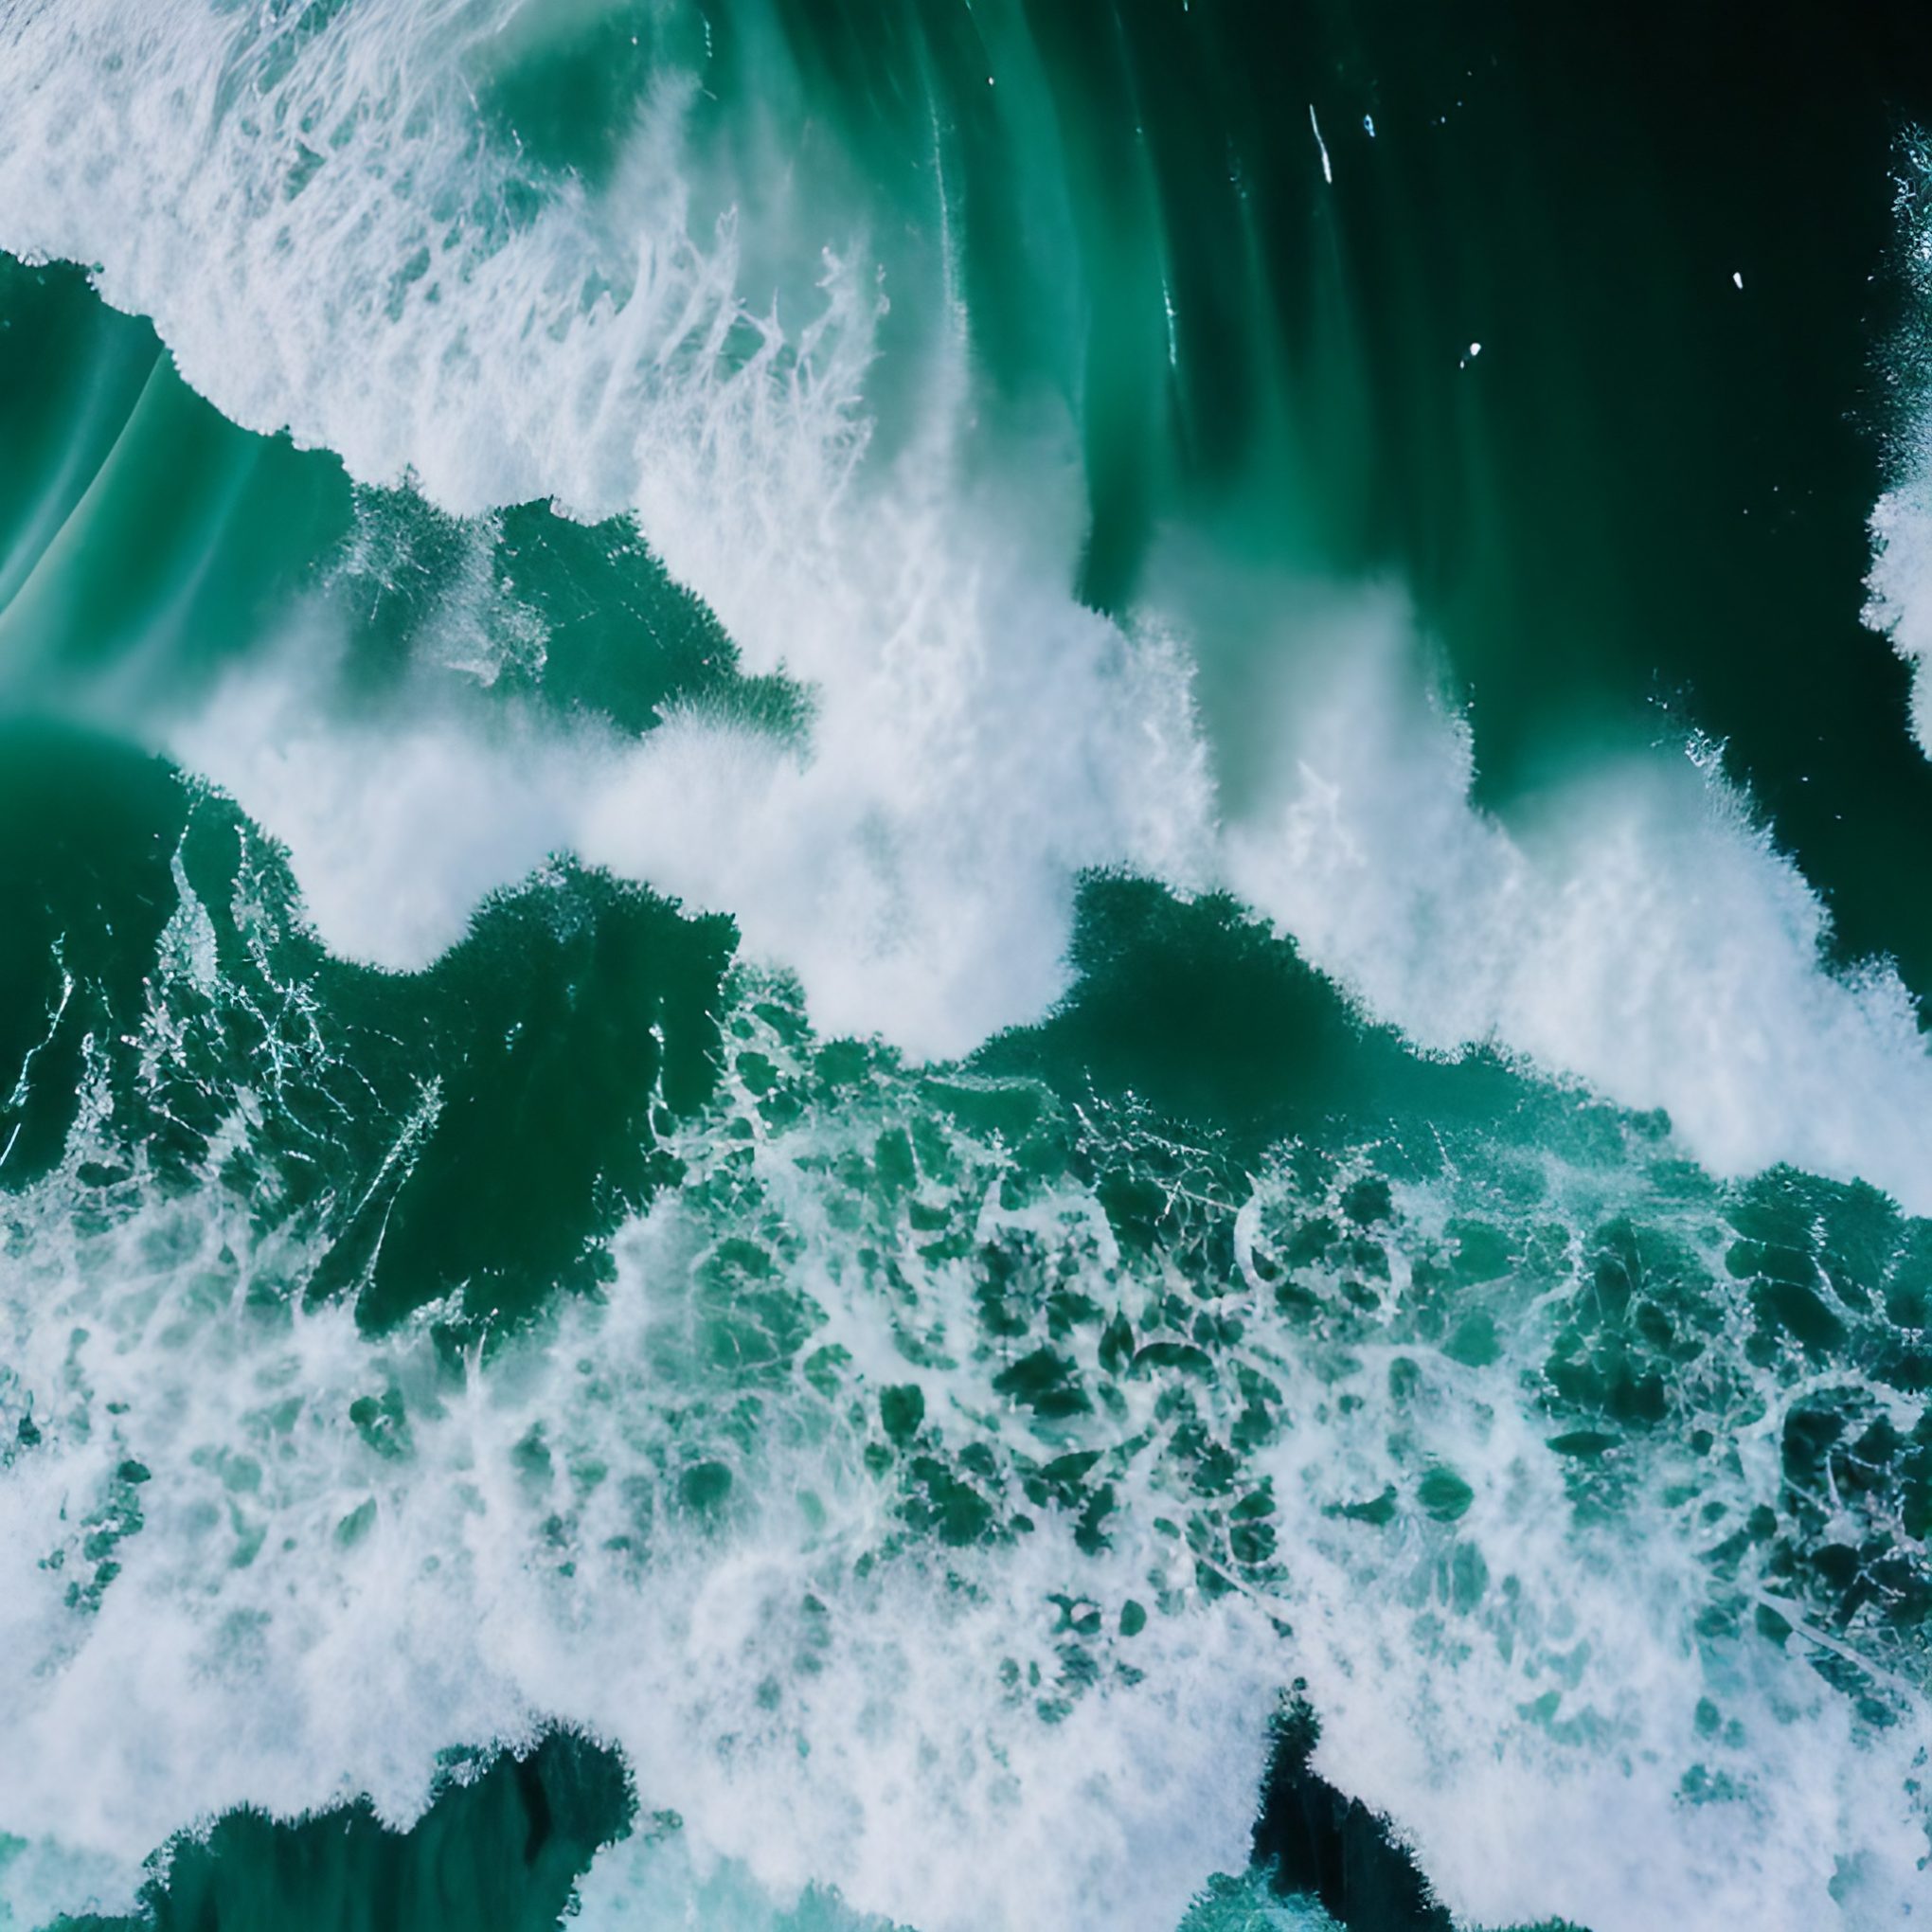 Free Stock Image of Ocean Waves breaking